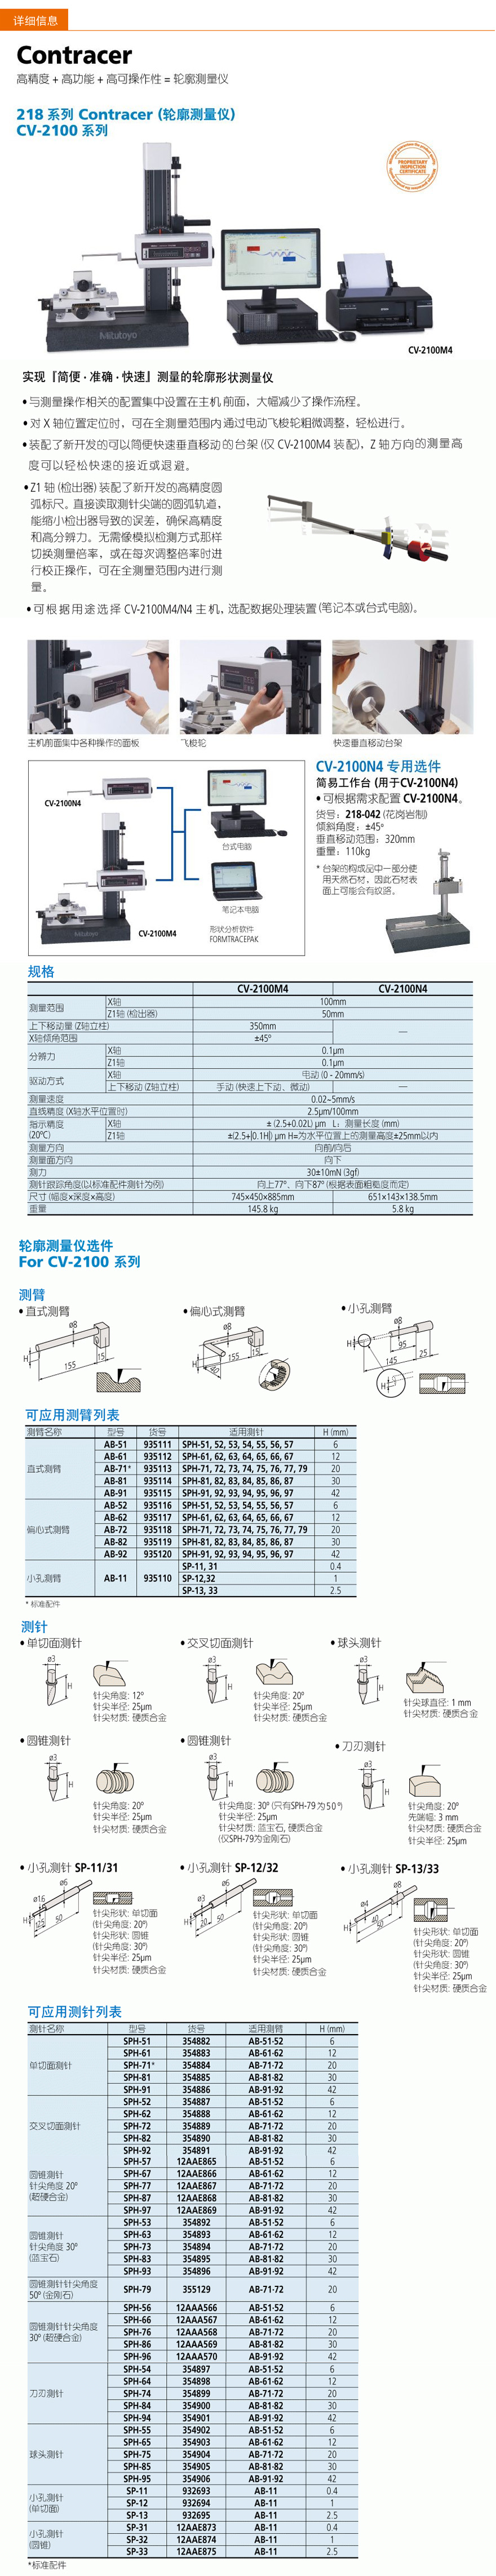 三丰轮廓测量仪CV-2100/CV-2100M4/CV-2100N4